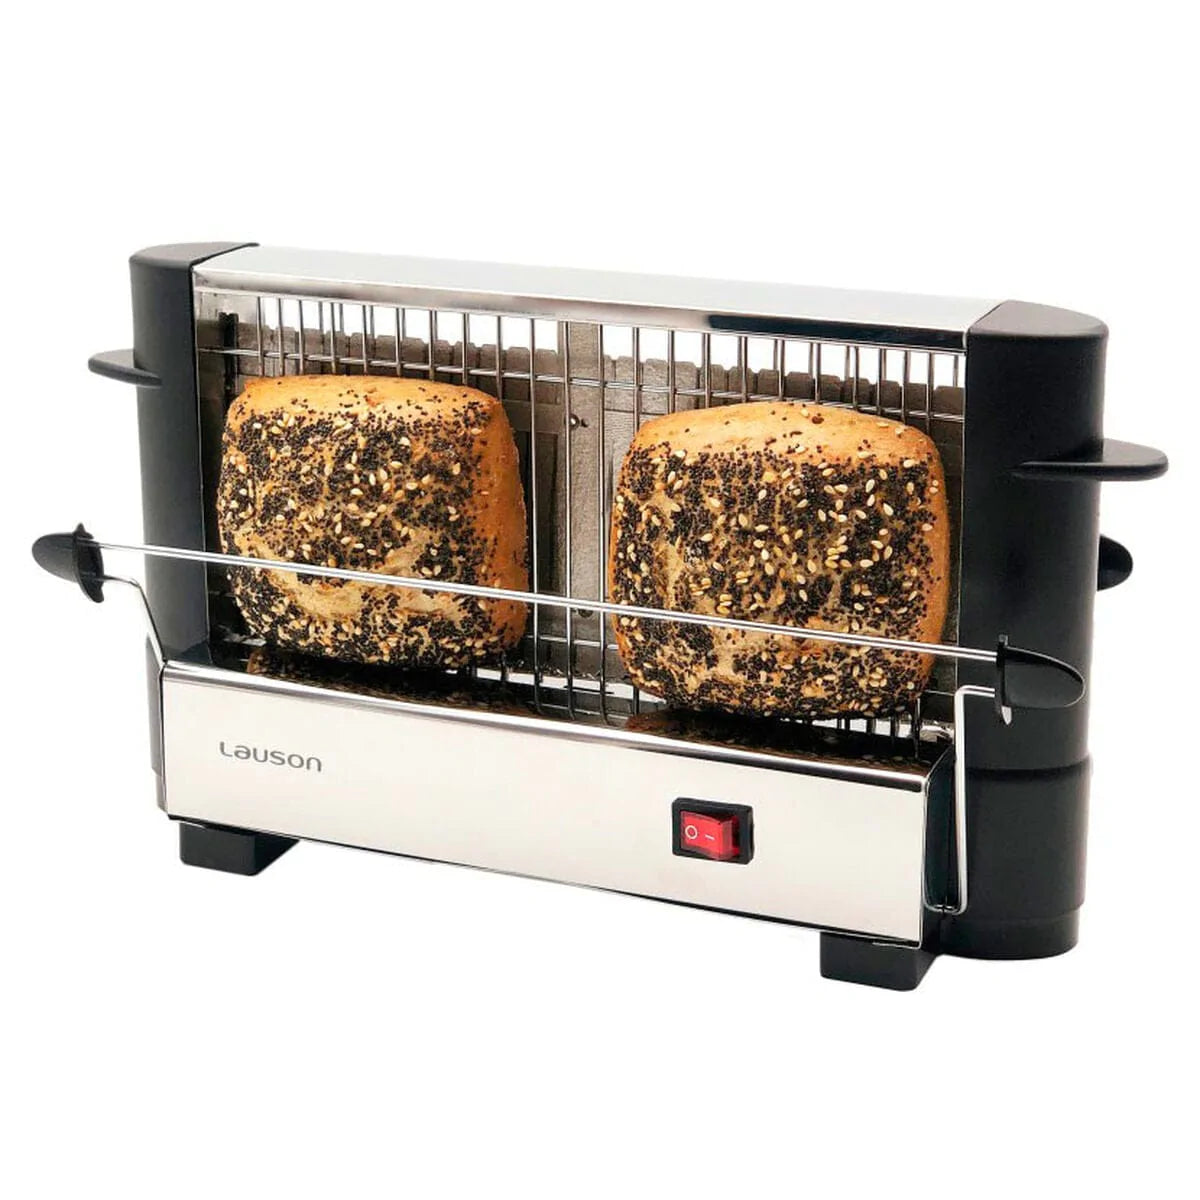 Lauson Küche | Gourmet > Elektrokleingeräte > Toaster Toaster Lauson ATT 114 Edelstahl 750 W